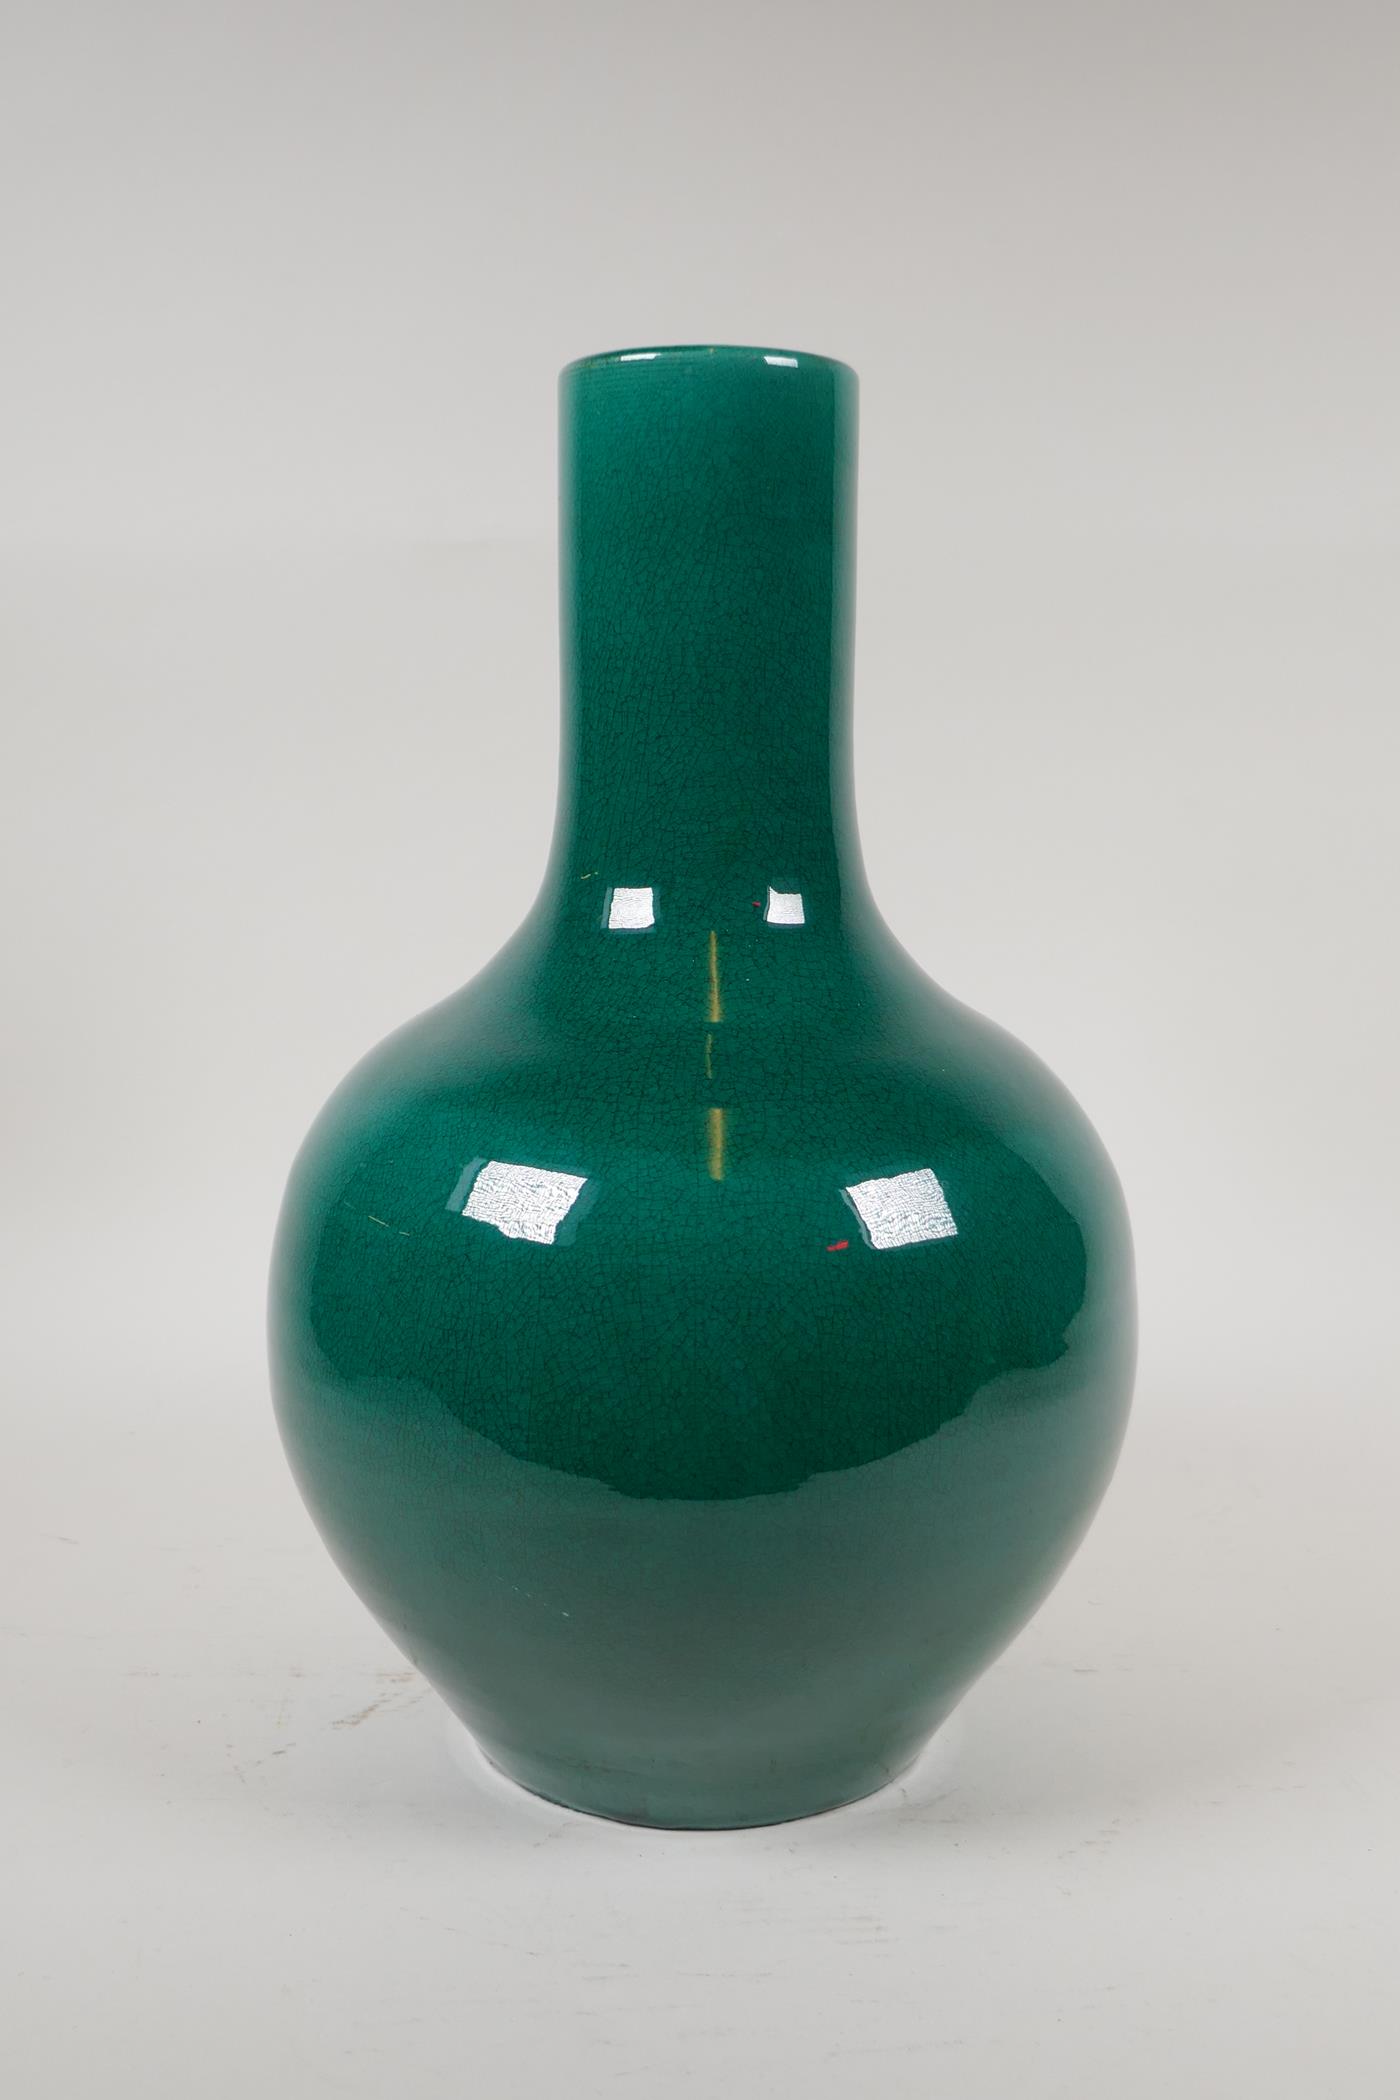 A Chinese emerald green crackle glazed porcelain bottle vase, 13" high